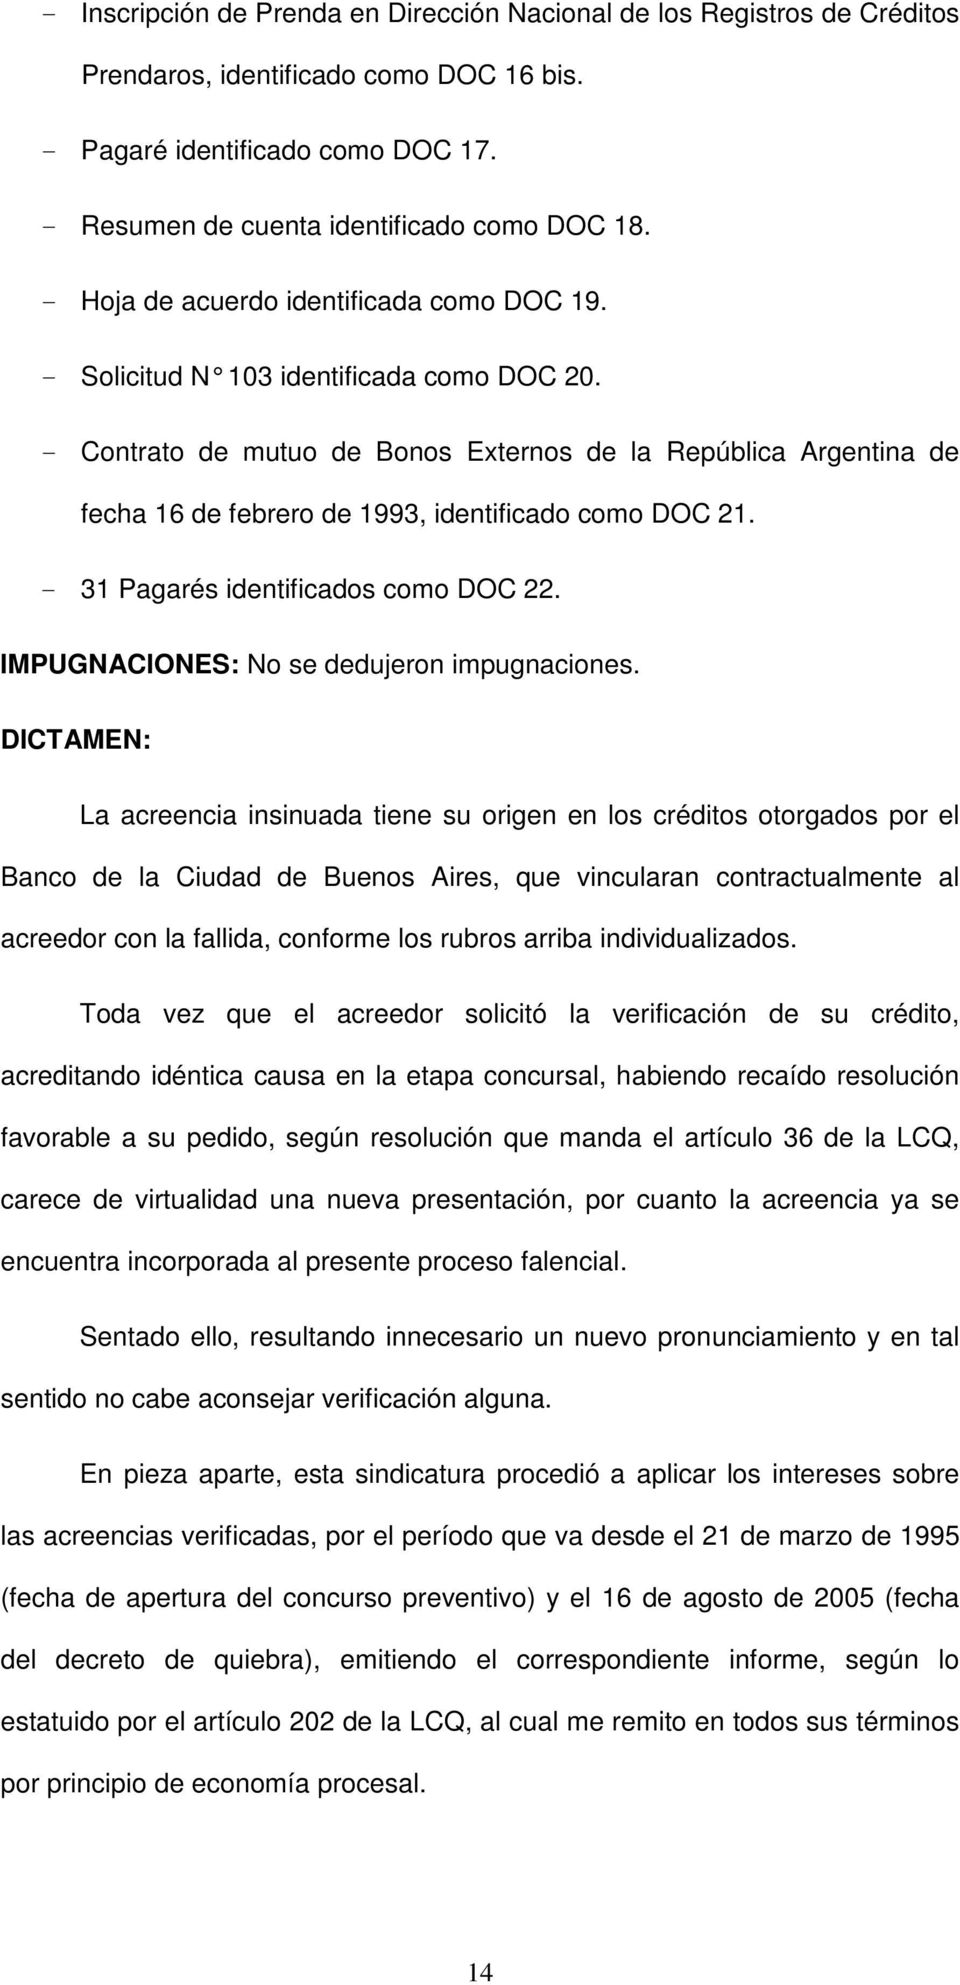 - Contrato de mutuo de Bonos Externos de la República Argentina de fecha 16 de febrero de 1993, identificado como DOC 21. - 31 Pagarés identificados como DOC 22.